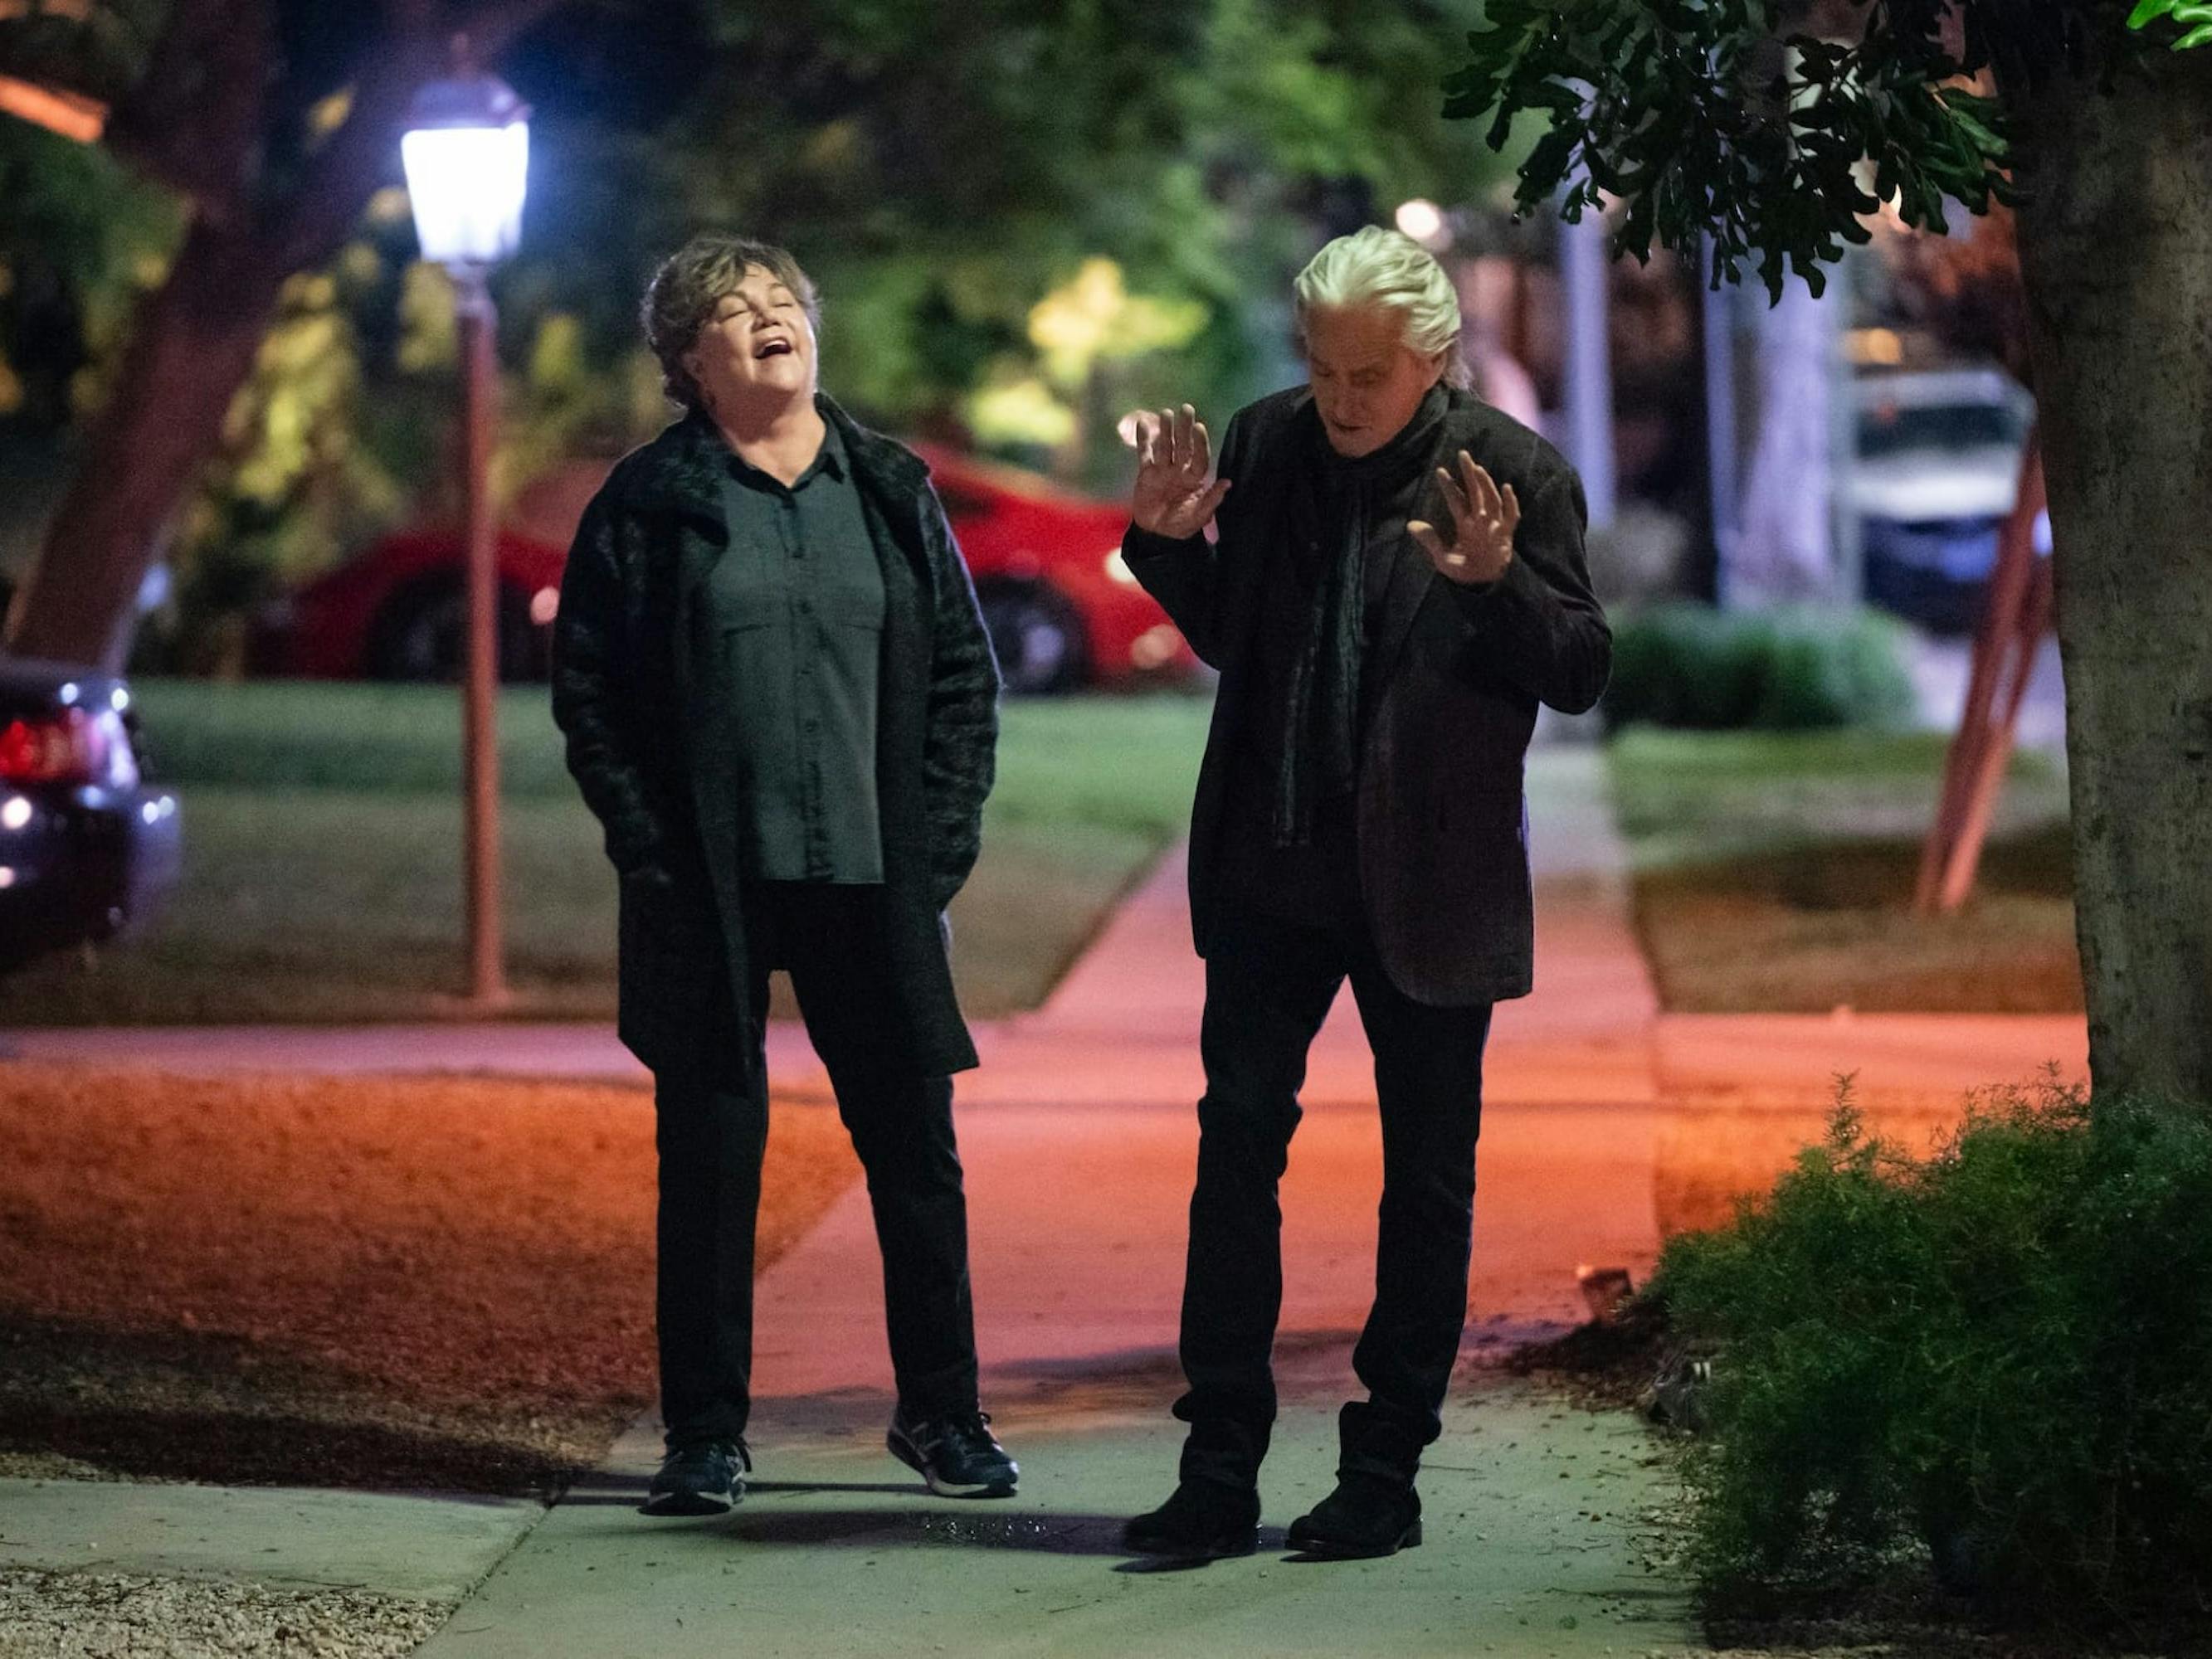 Roz (Kathleen Turner) and Sandy Kominsky (Michael Douglas) in The Kominsky Method walk down the sidewalk talking and laughing.